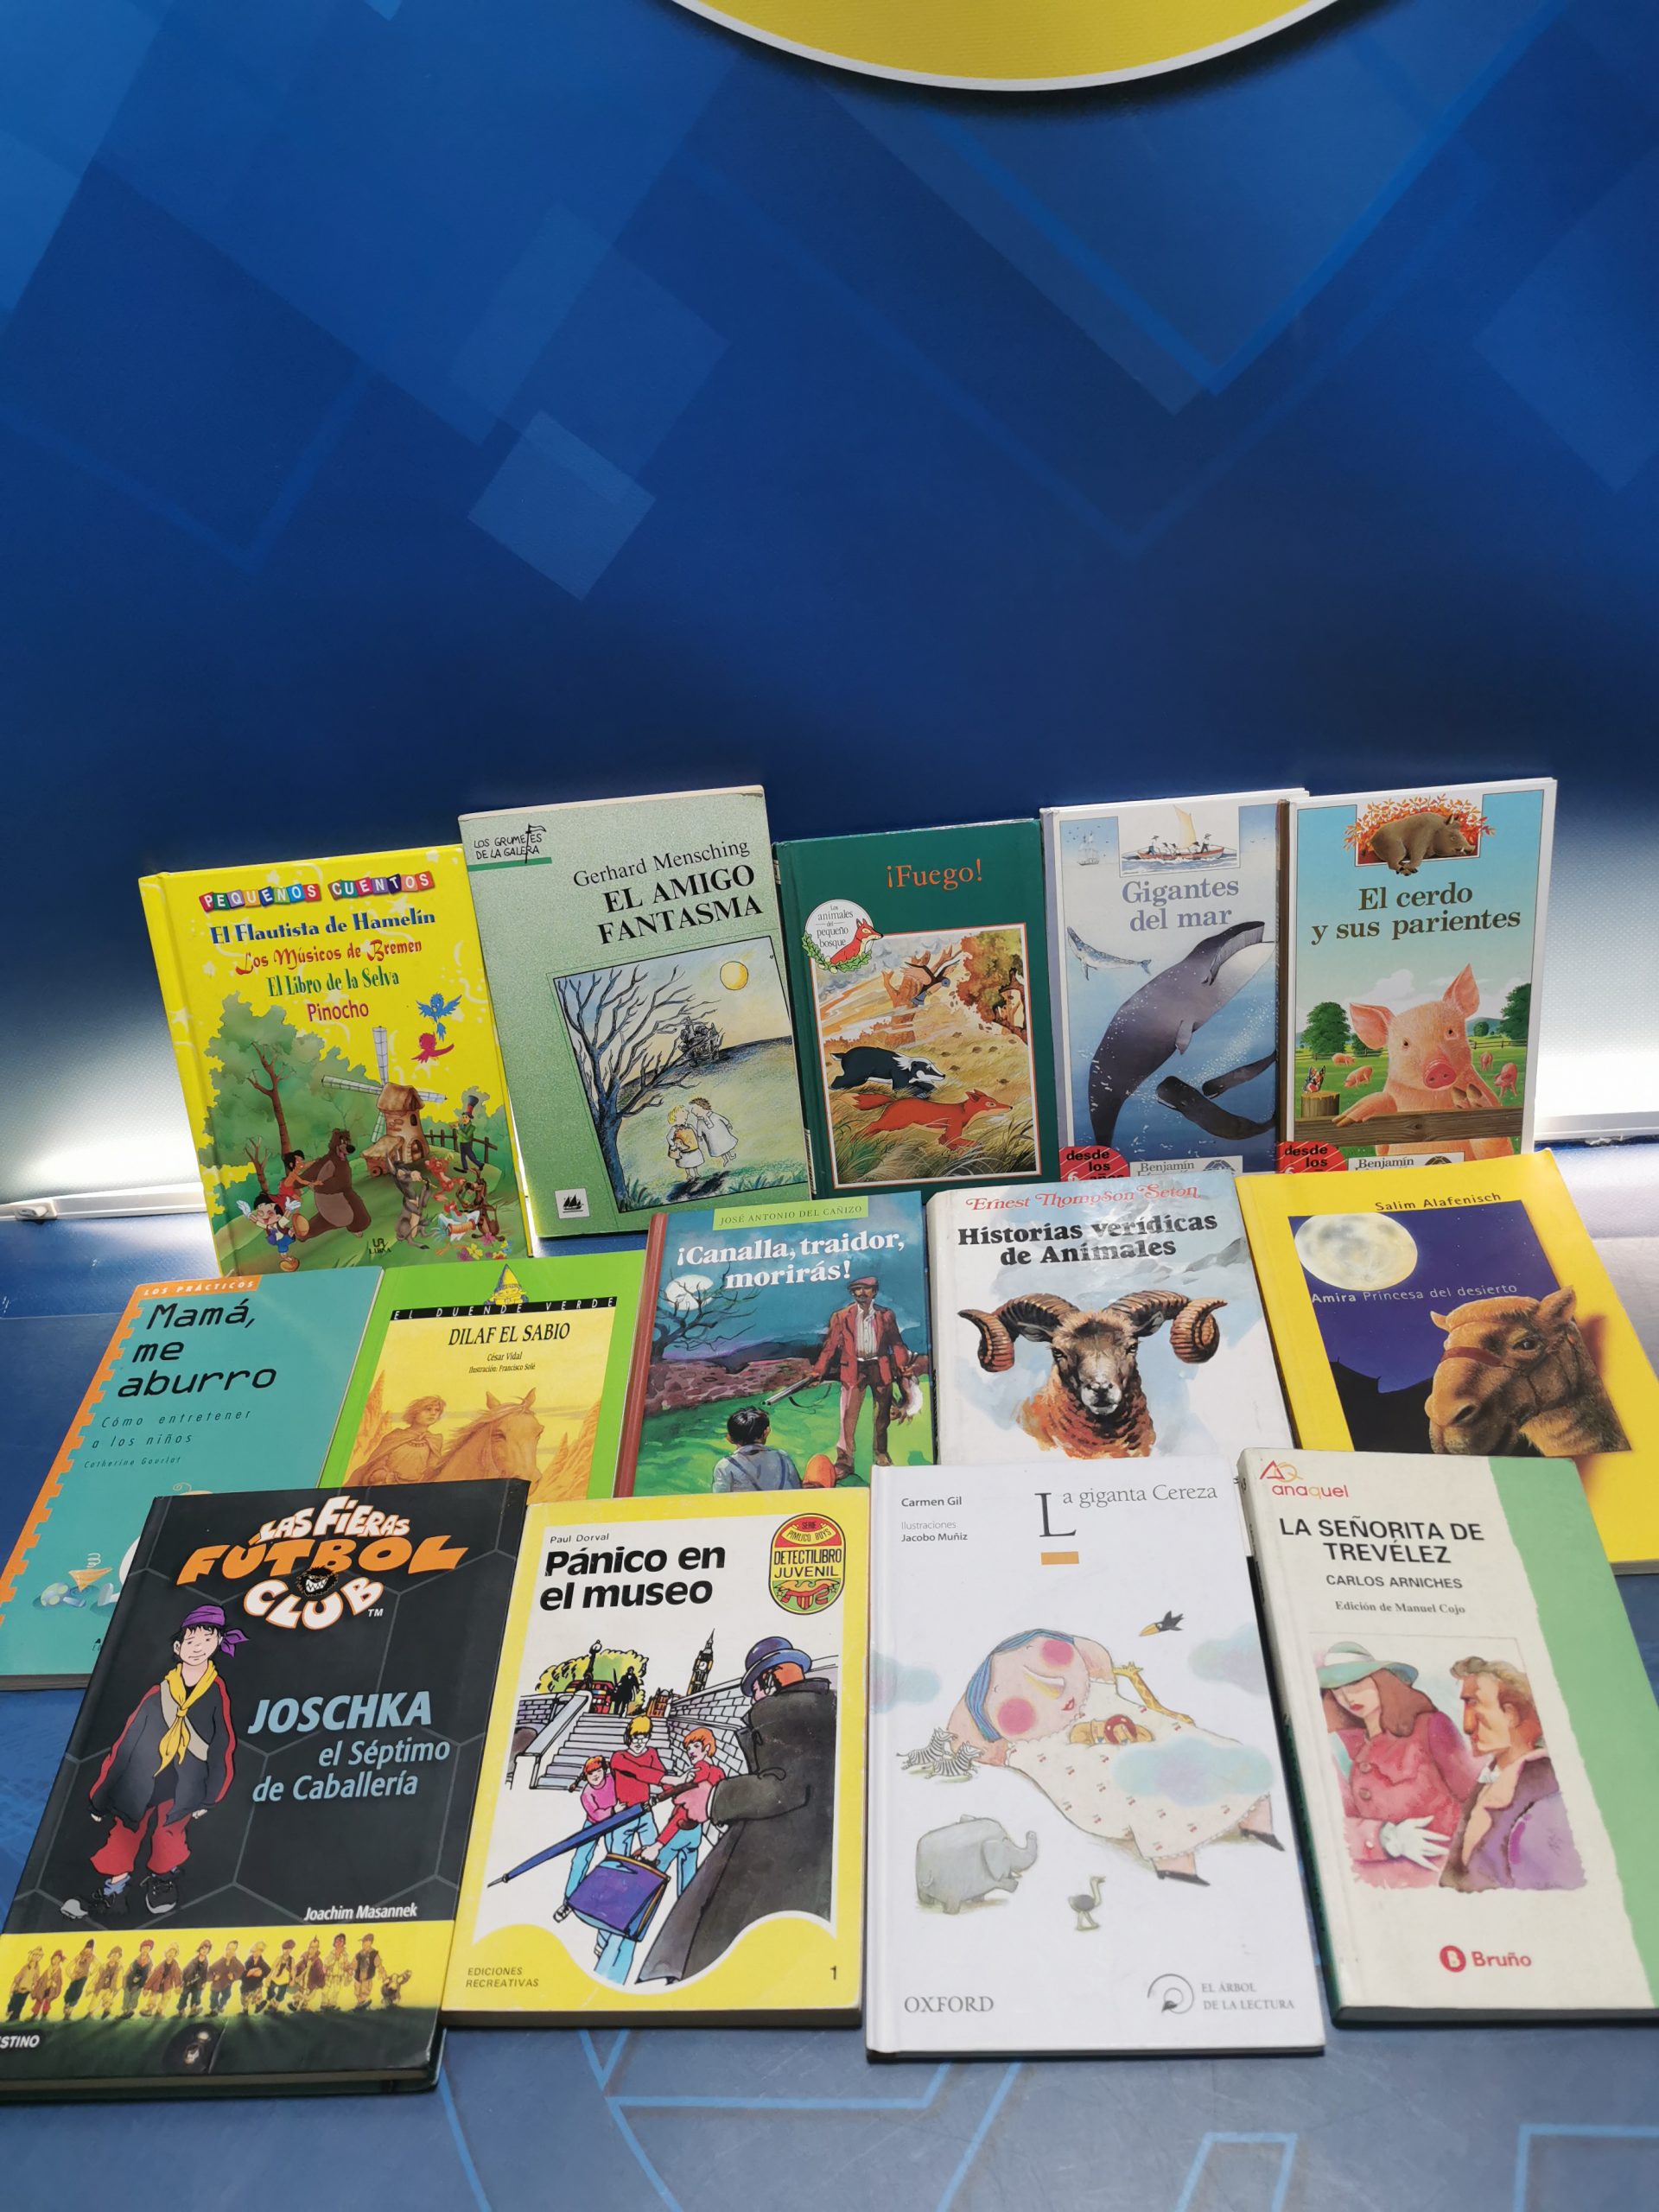 MINILIBROS de la editorial Tragamanzanas: cuentos de calidad en formato  pequeño - Club Peques Lectores: cuentos y creatividad infantil